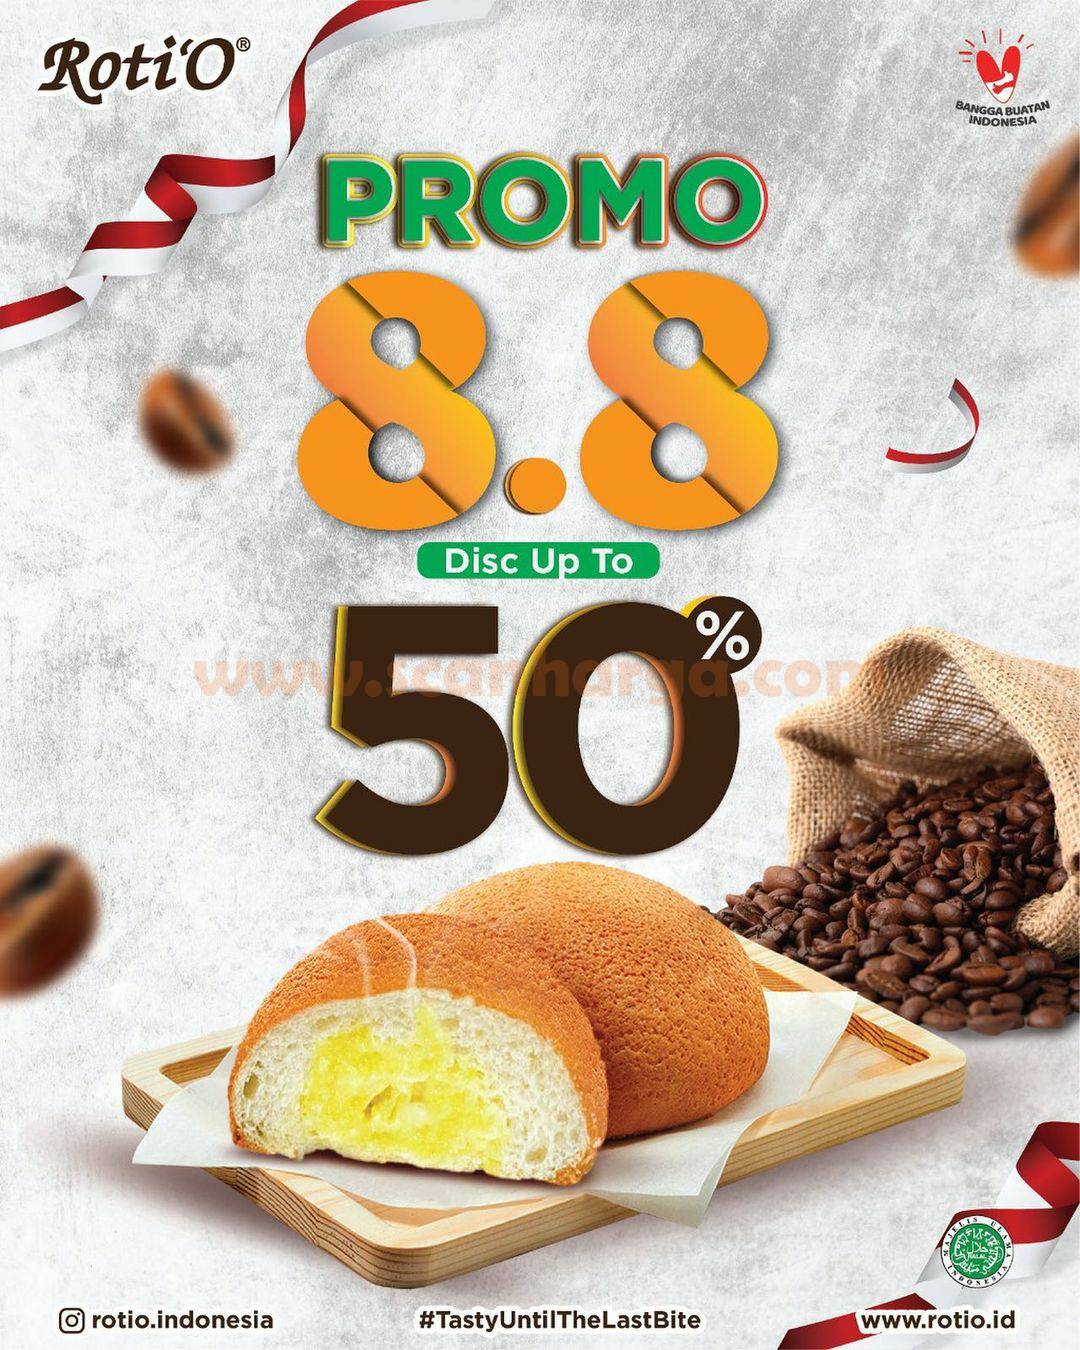 ROTI'O PROMO 8.8 DisKon 50% untuk pembelian 6 - 12 Roti O